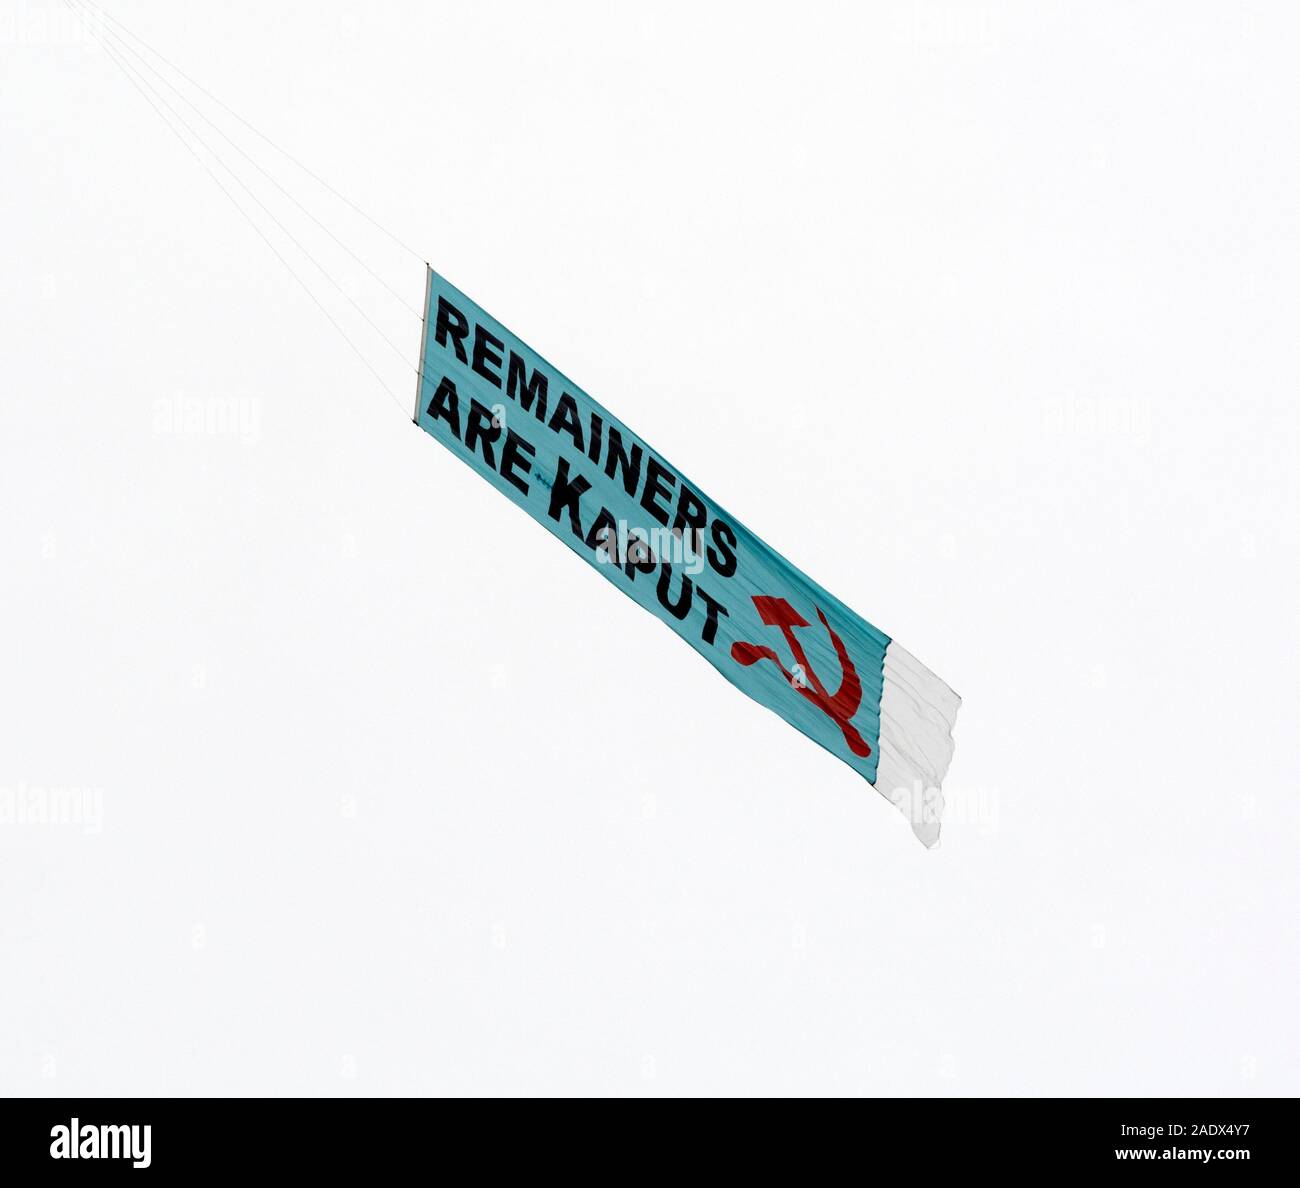 Pre- elezione generale 'Remainers sono Kaput' banner trainate dietro un aereo sulla città di Warwick, Warwickshire, Regno Unito Foto Stock